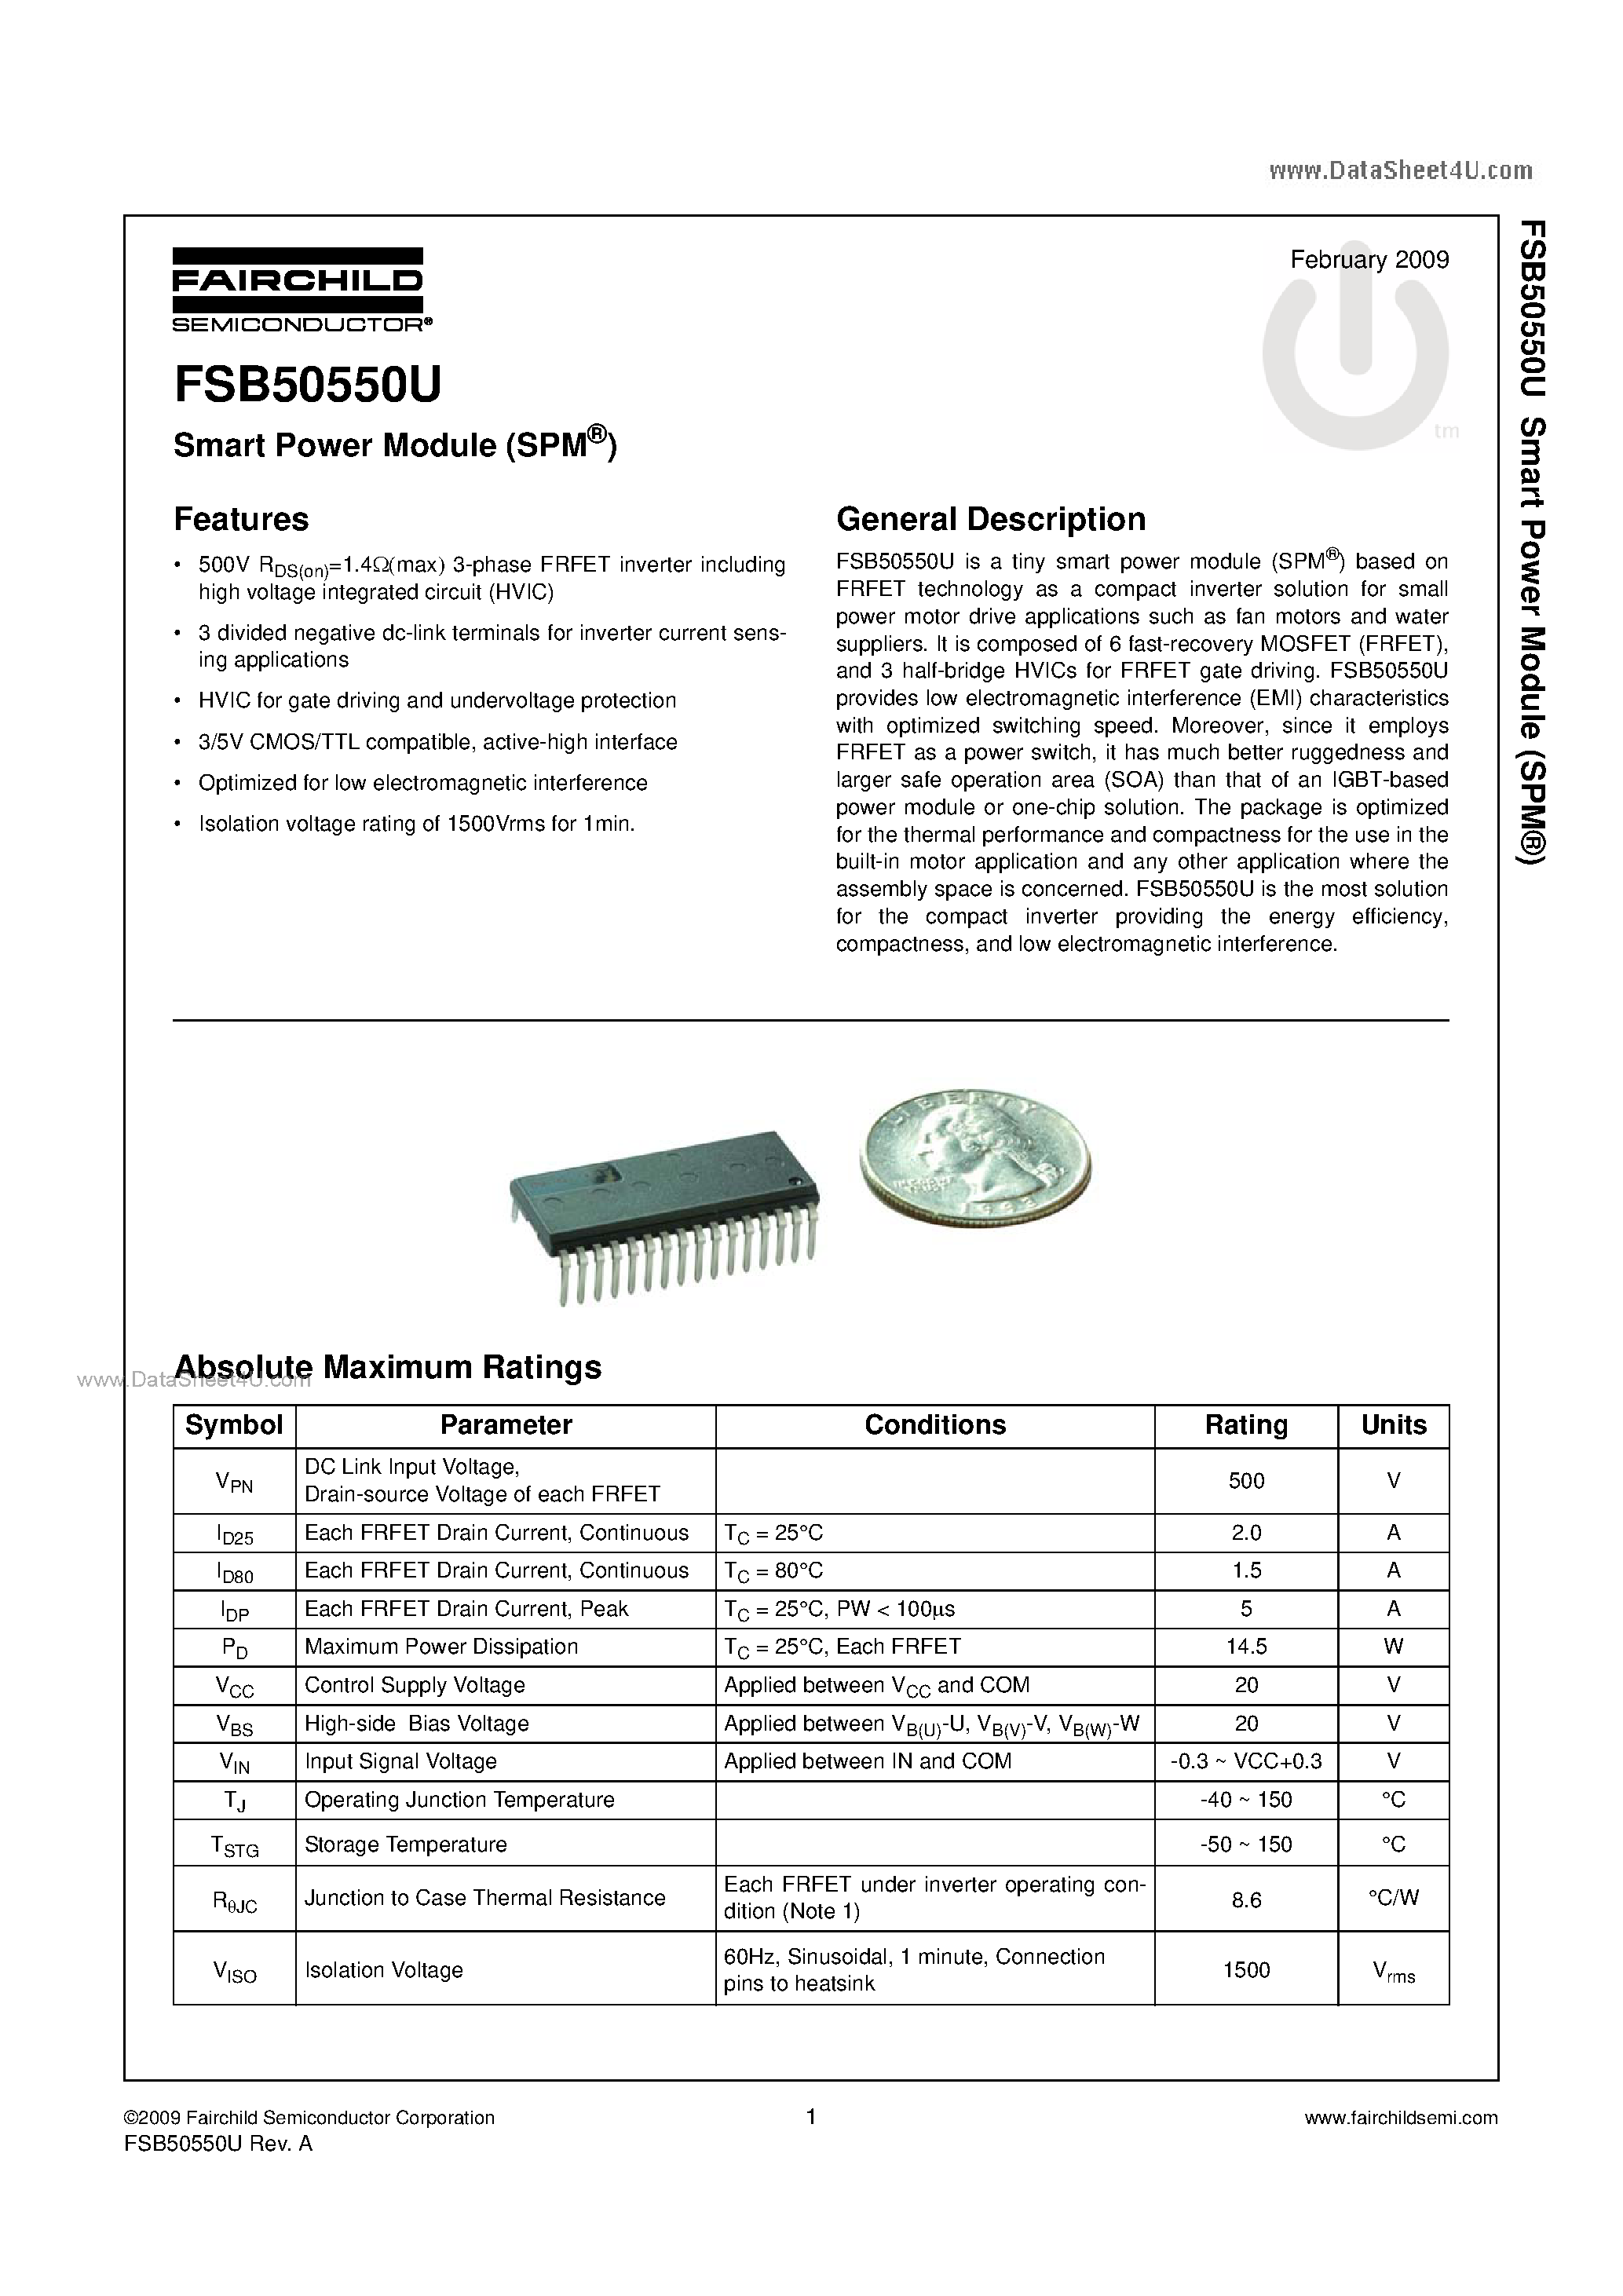 Даташит FSB50550U - Smart Power Module страница 1